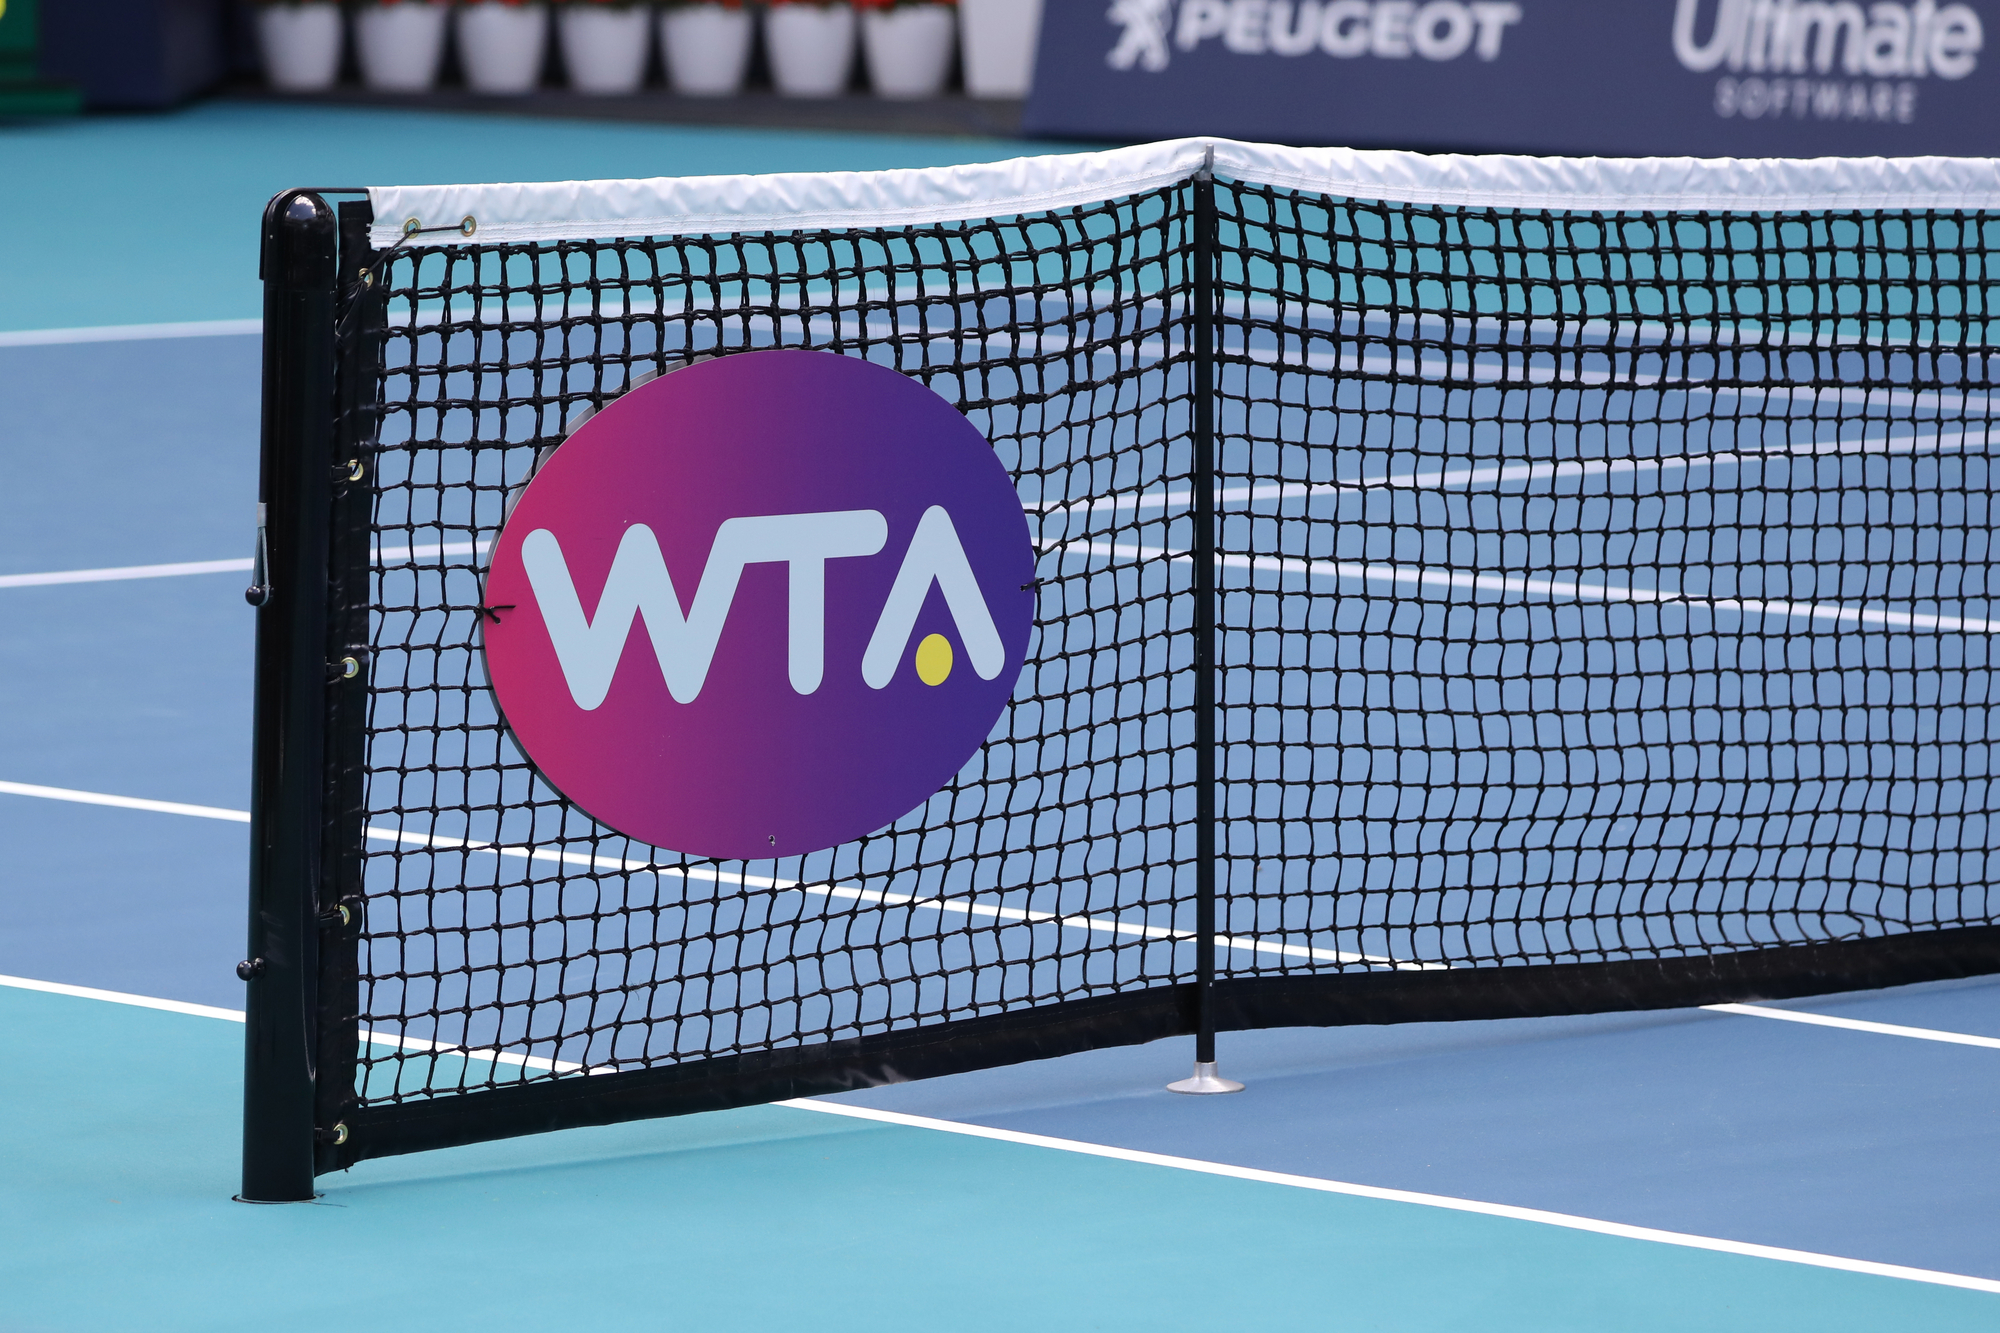 WTA – ženská tenisová asociace, která nabízí ten nejlepší tenis